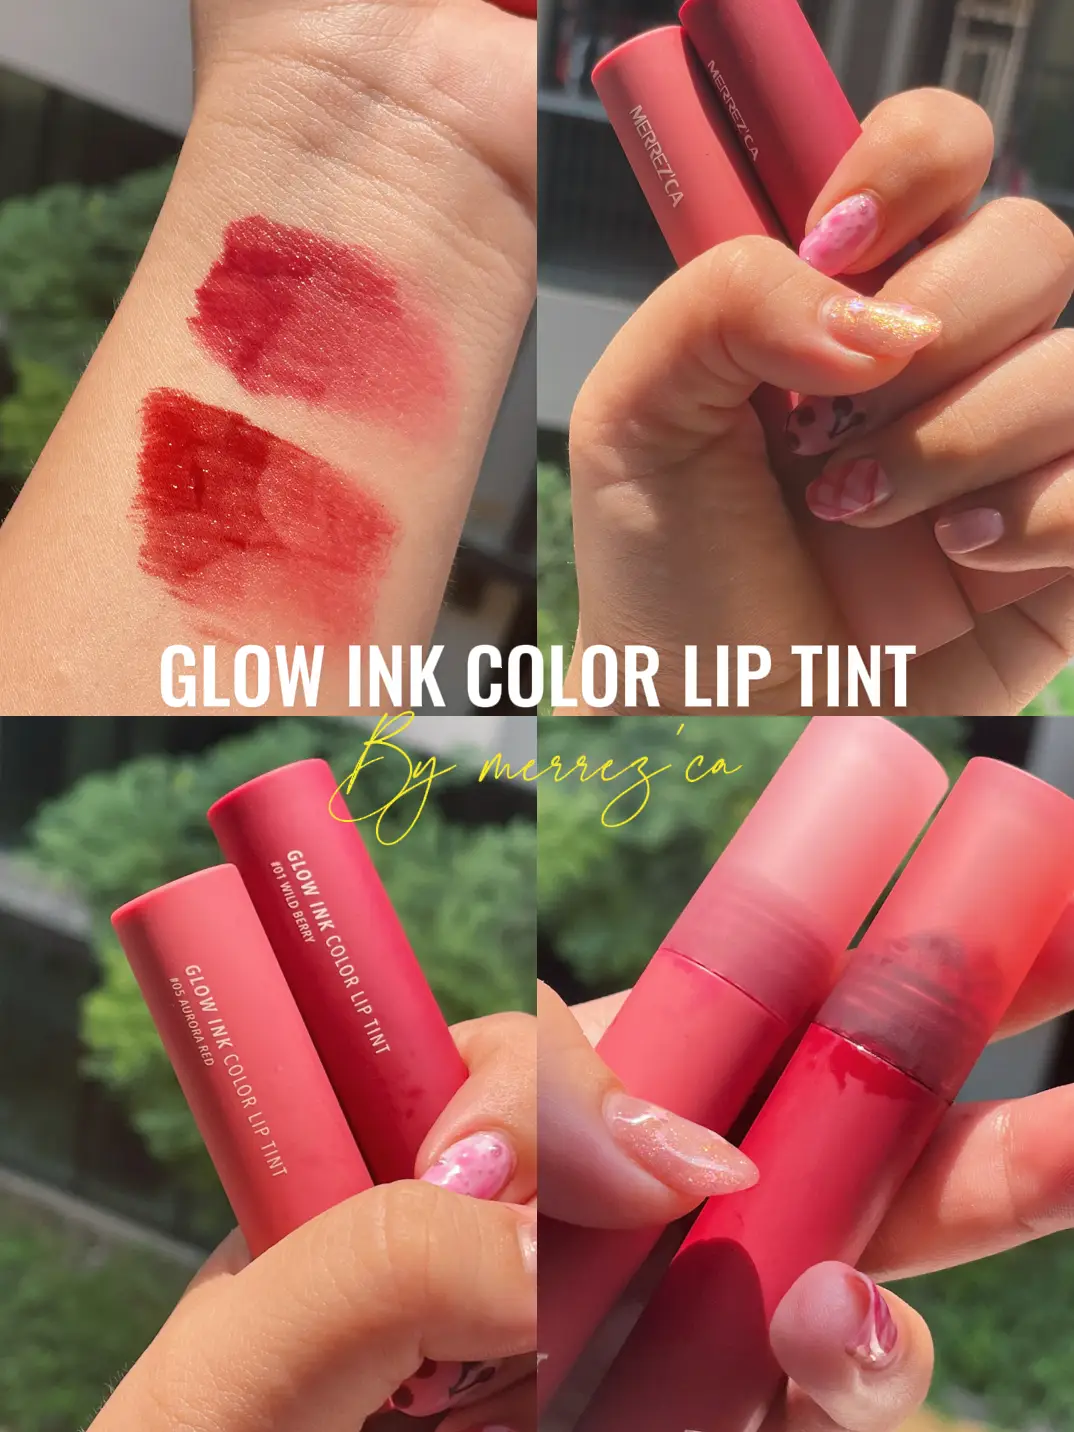 รีวิว Glow ink color lip tint by MERREZ'CA 💄